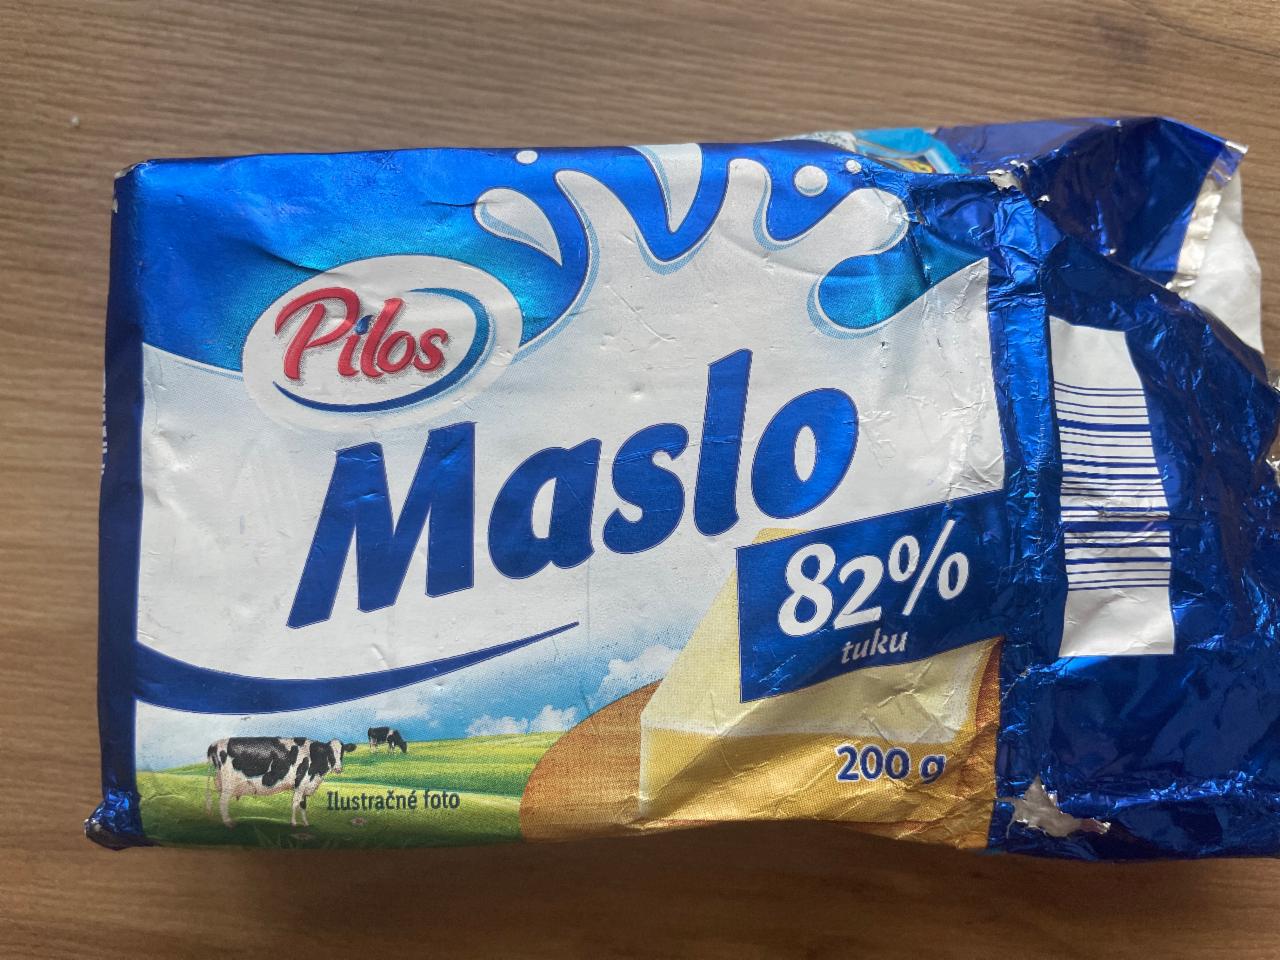 Fotografie - Maslo 82% tuku Pilos